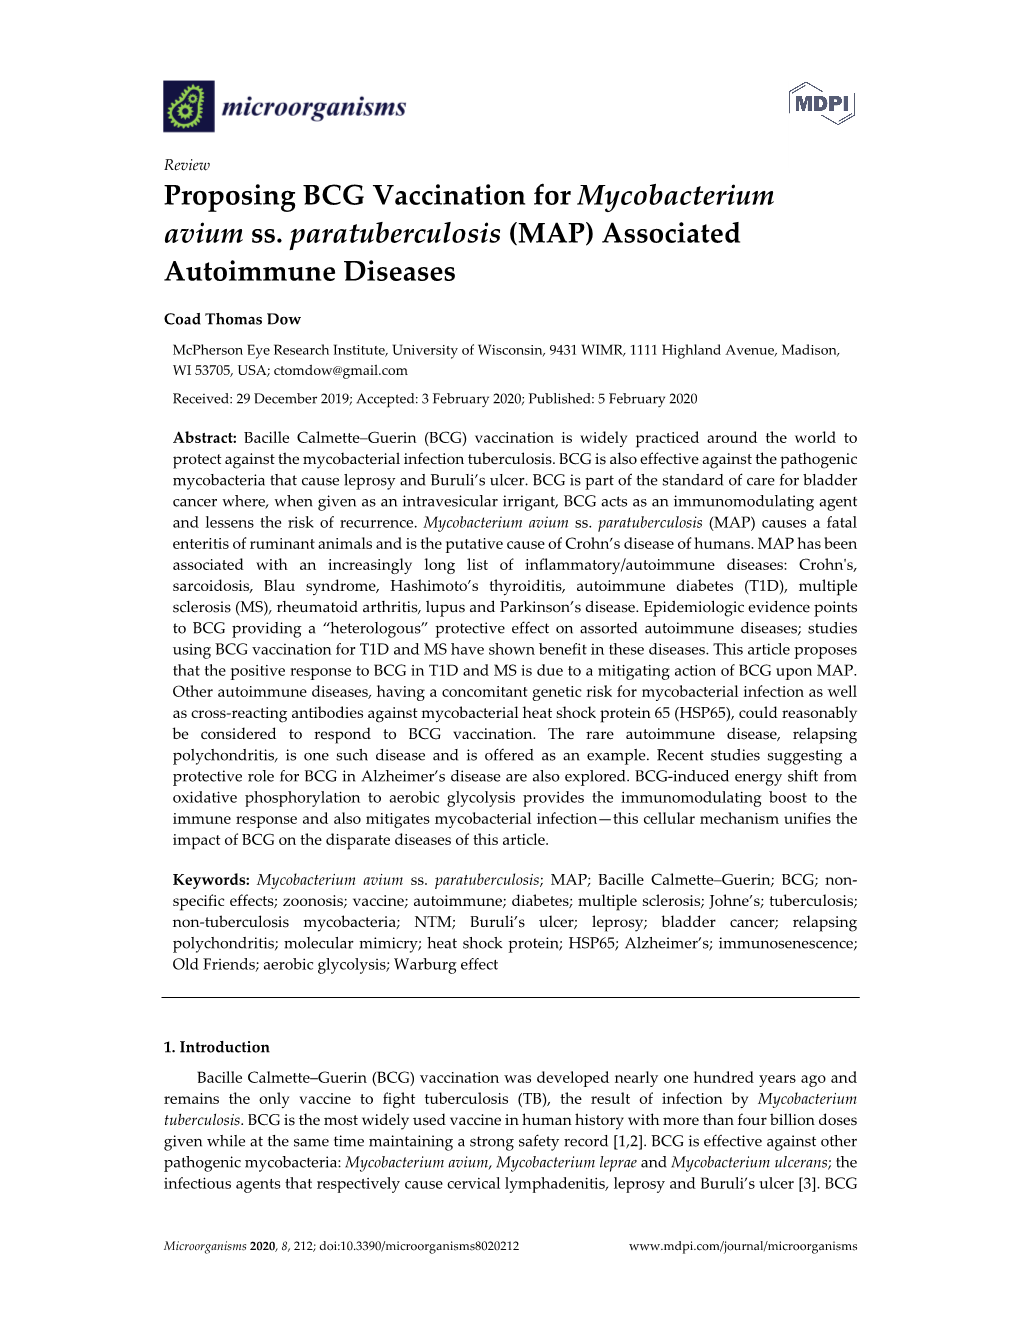 Proposing BCG Vaccination for Mycobacterium Avium Ss